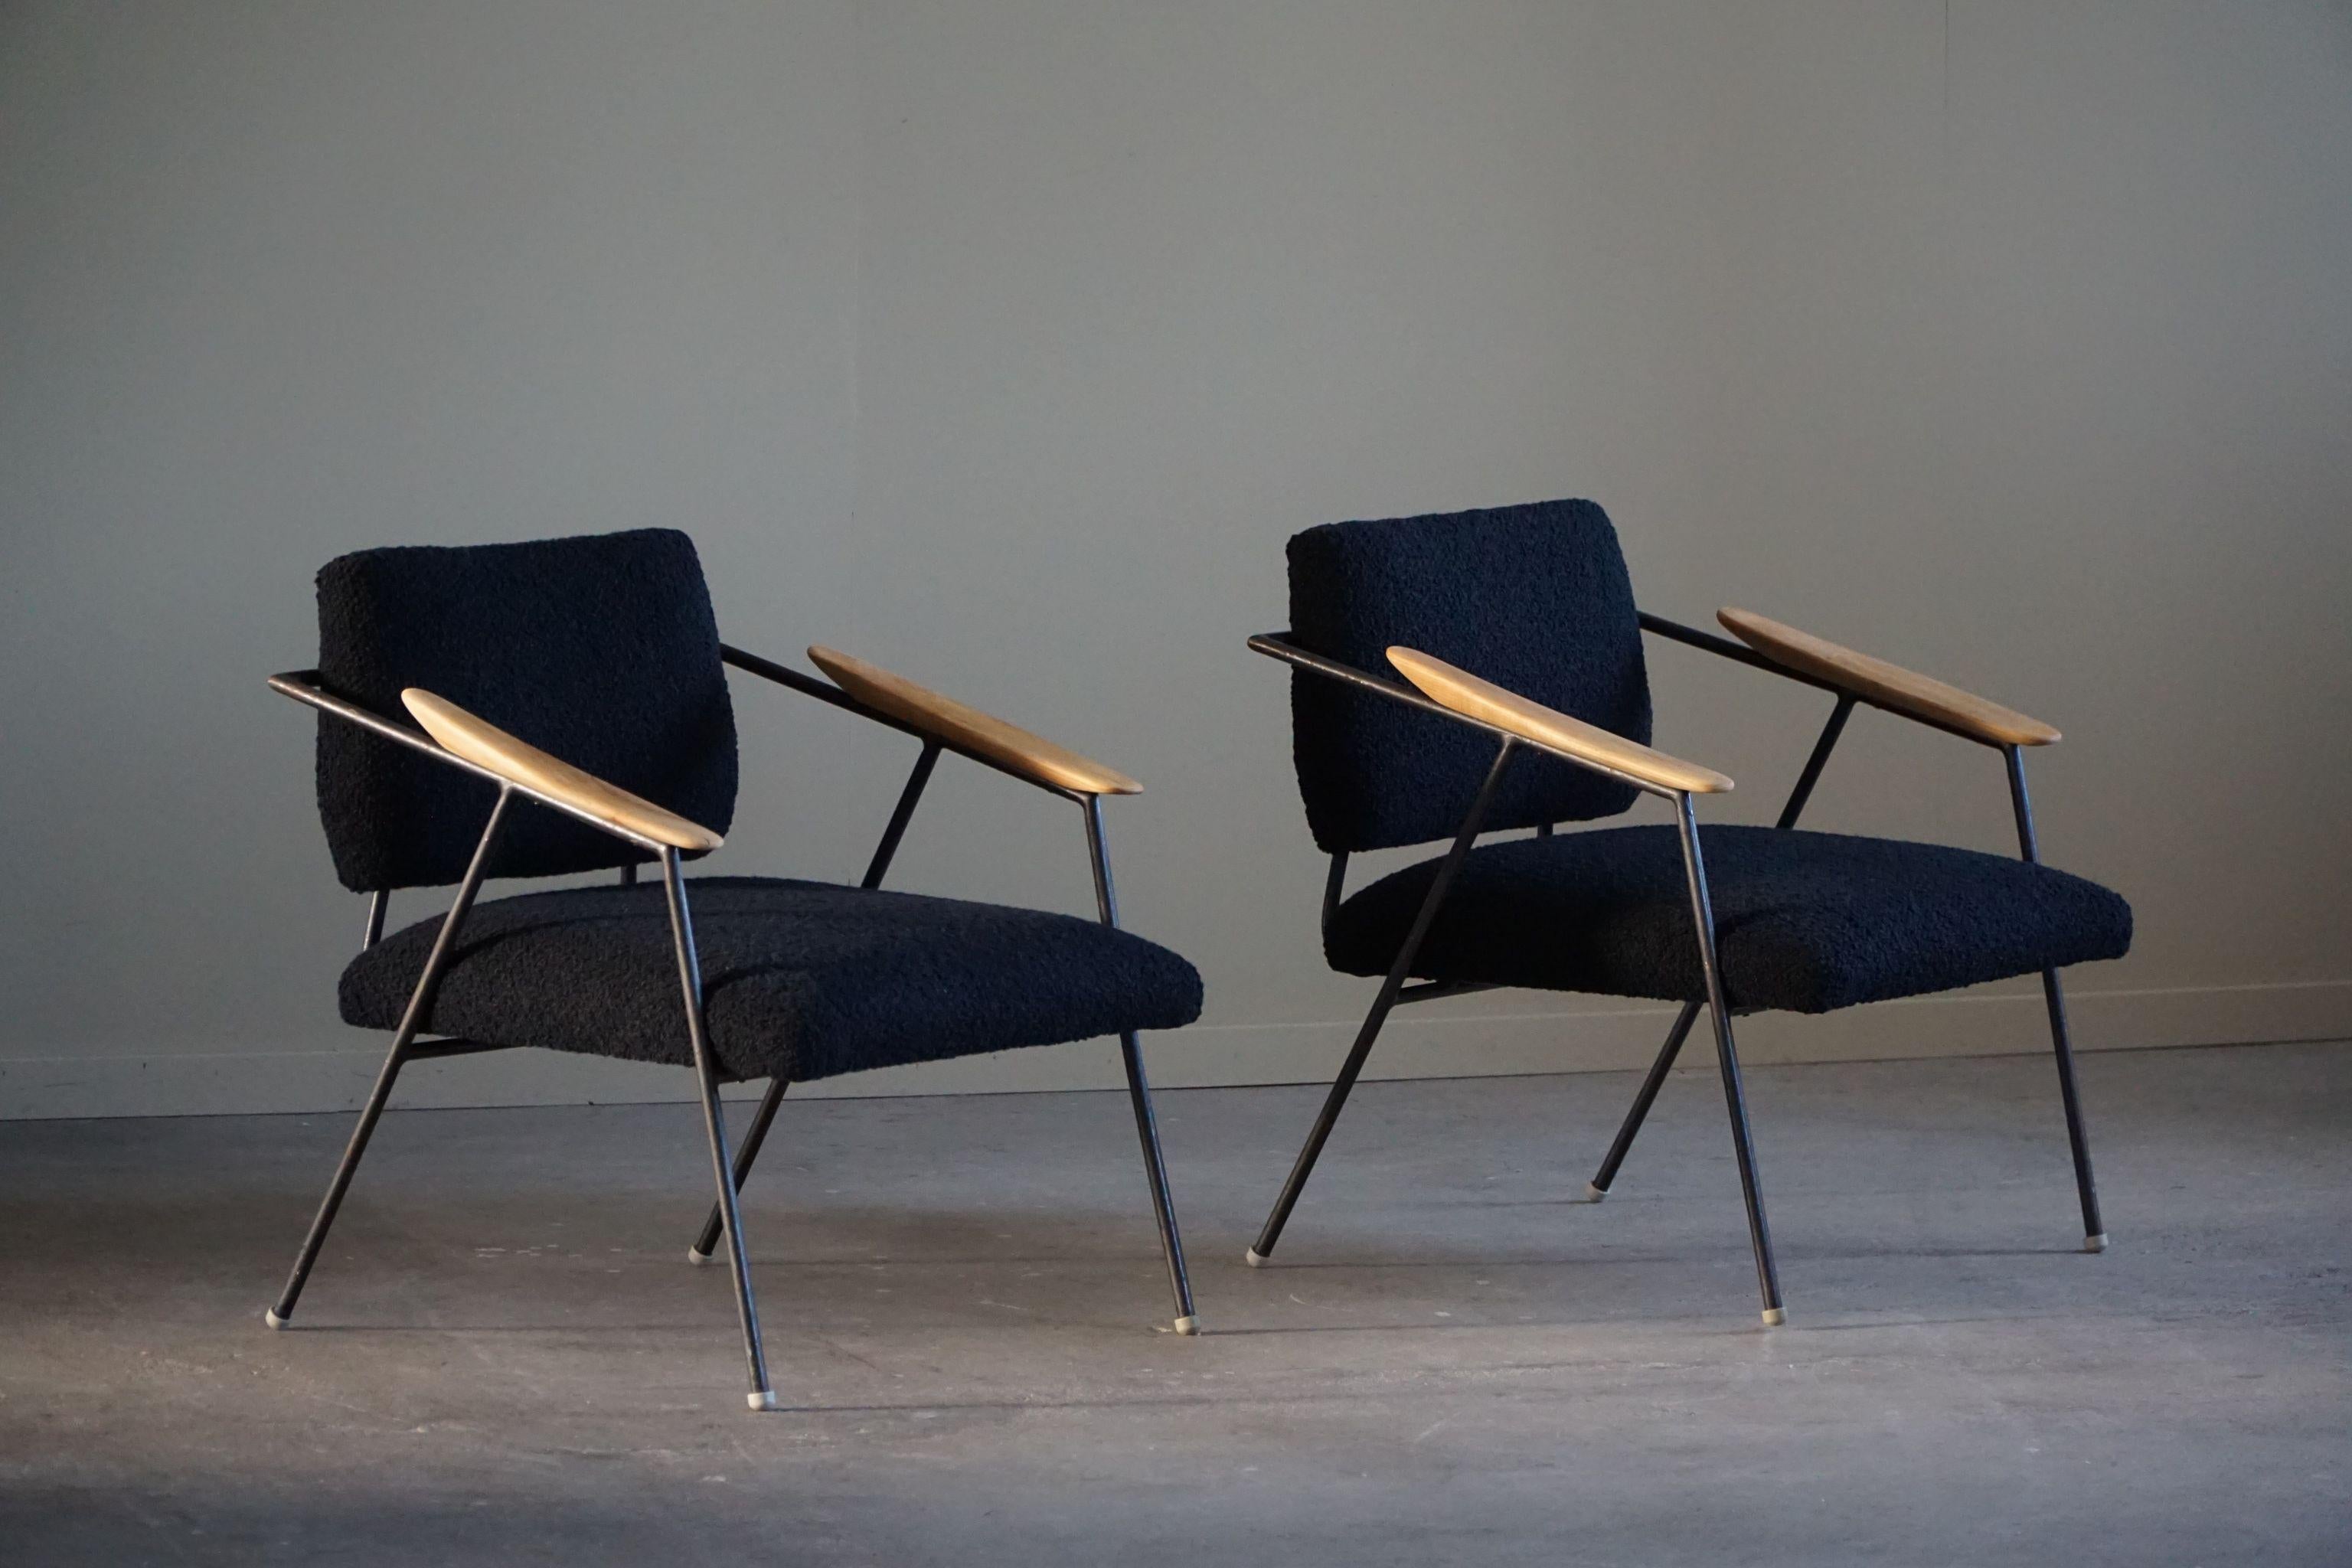 Dieses Paar Loungesessel, das in den 1960er Jahren in Deutschland im Bauhaus-Stil hergestellt wurde, verbindet mühelos Form und Funktion. Die Stühle verfügen über ein elegantes Metallgestell, das die für das Bauhaus-Design charakteristische